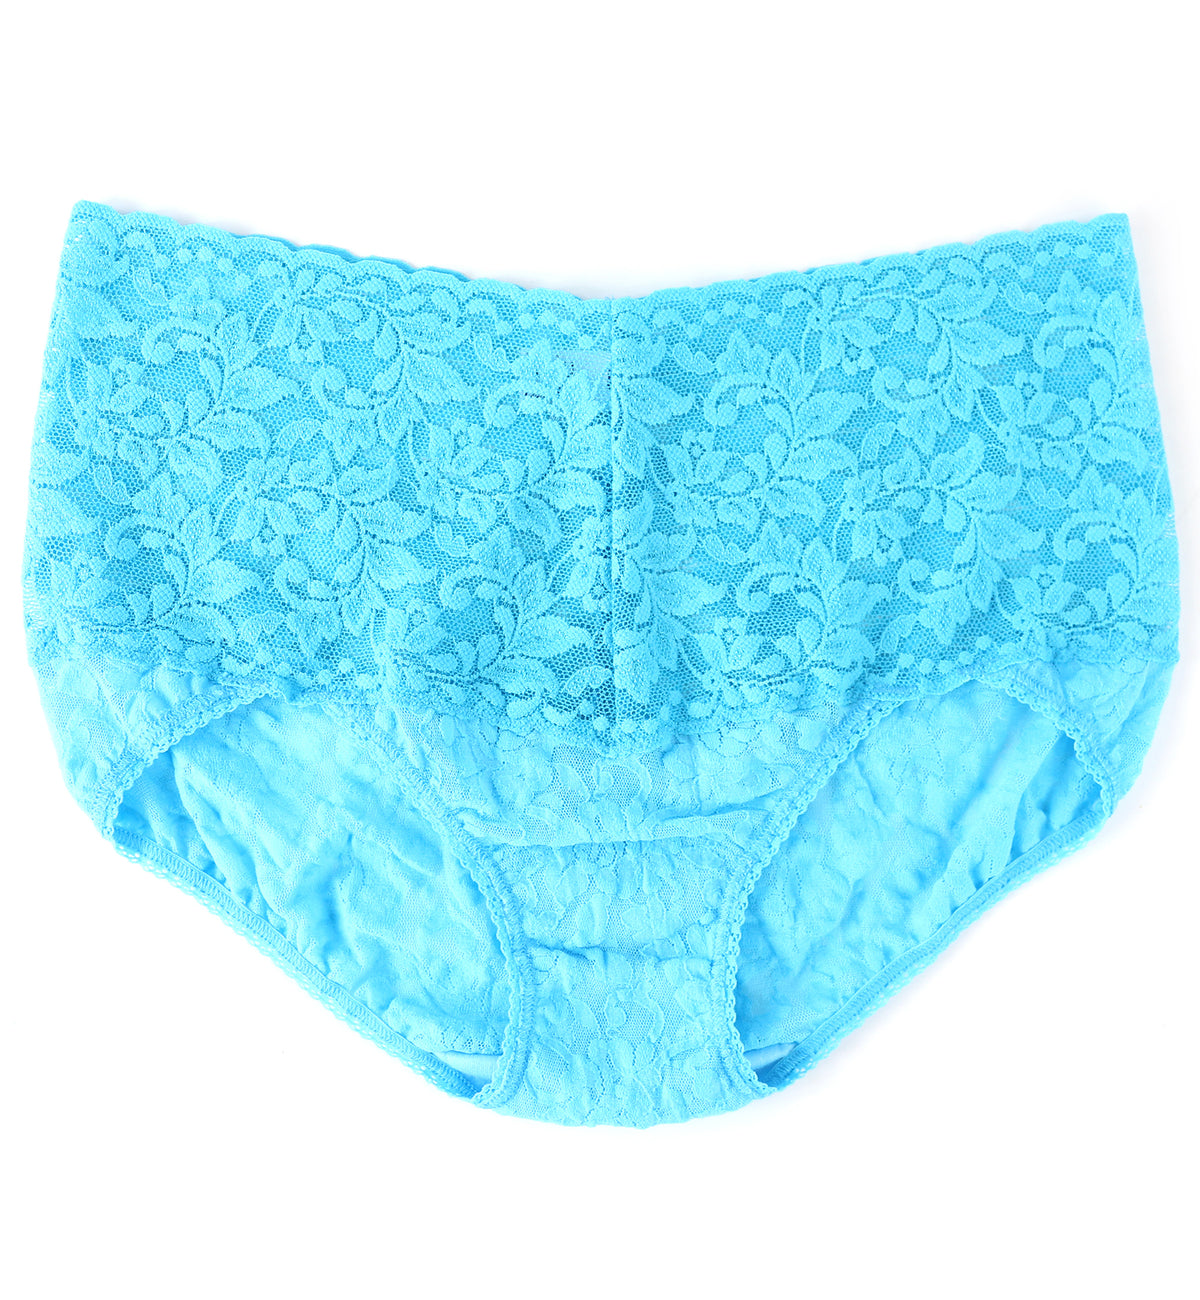 Hanky Panky Retro Lace V-kini (9K2124),Medium,Tempting Turquoise - Tempting Turquoise,Medium